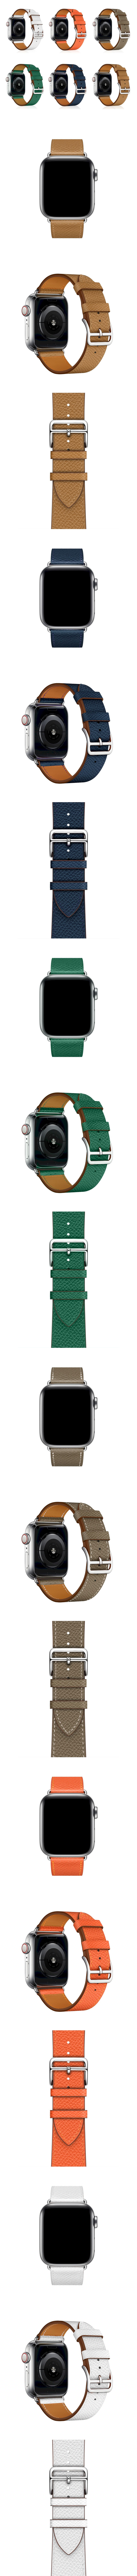 830-Watch-頭層牛皮真皮錶帶經典十字壓紋皮革錶帶